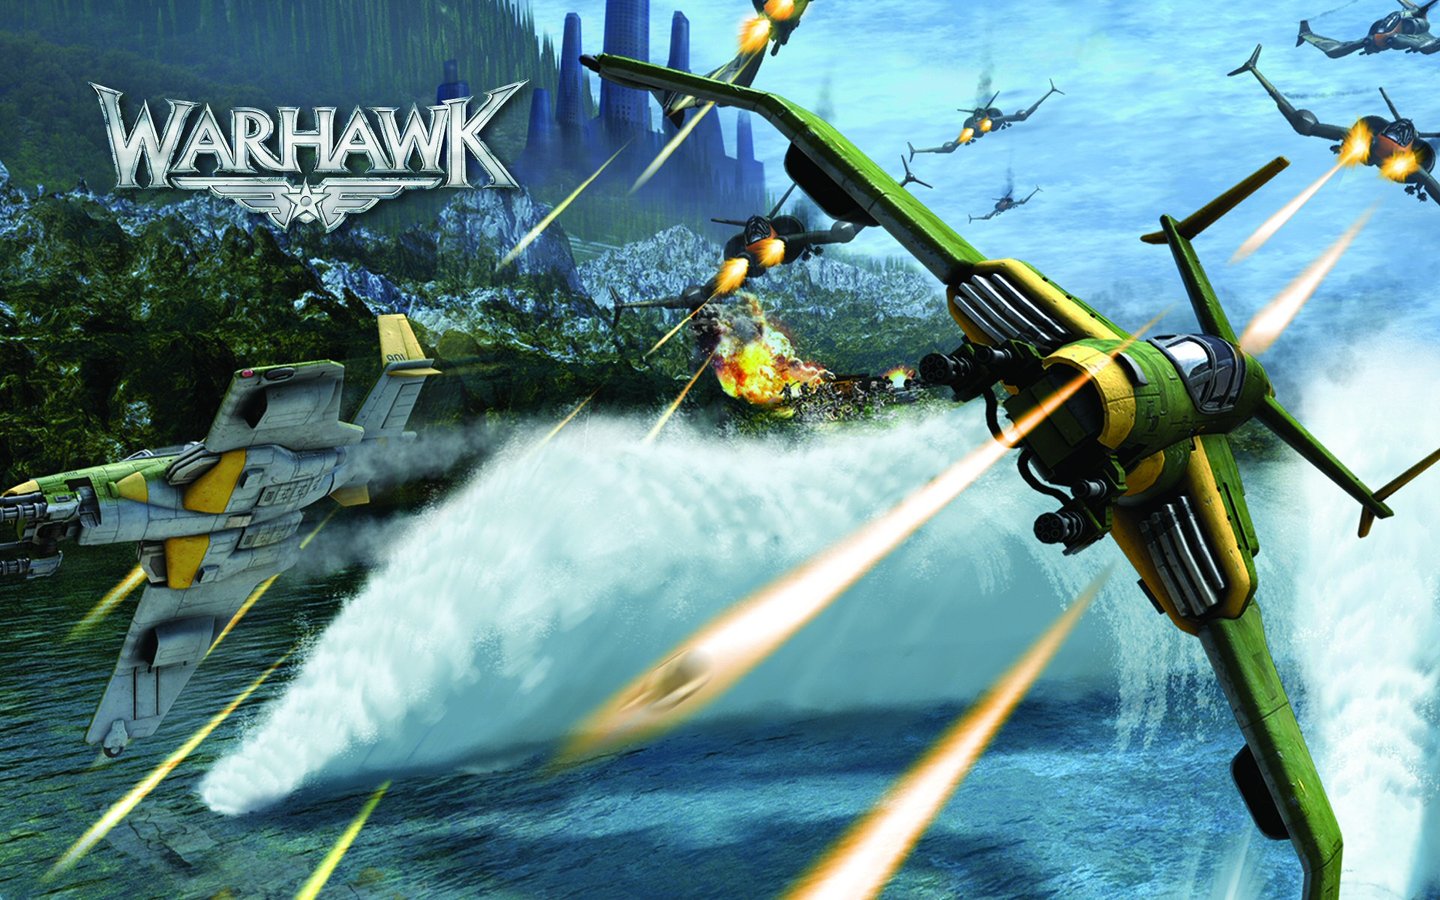 Warhawk - PS3 Wallpaper